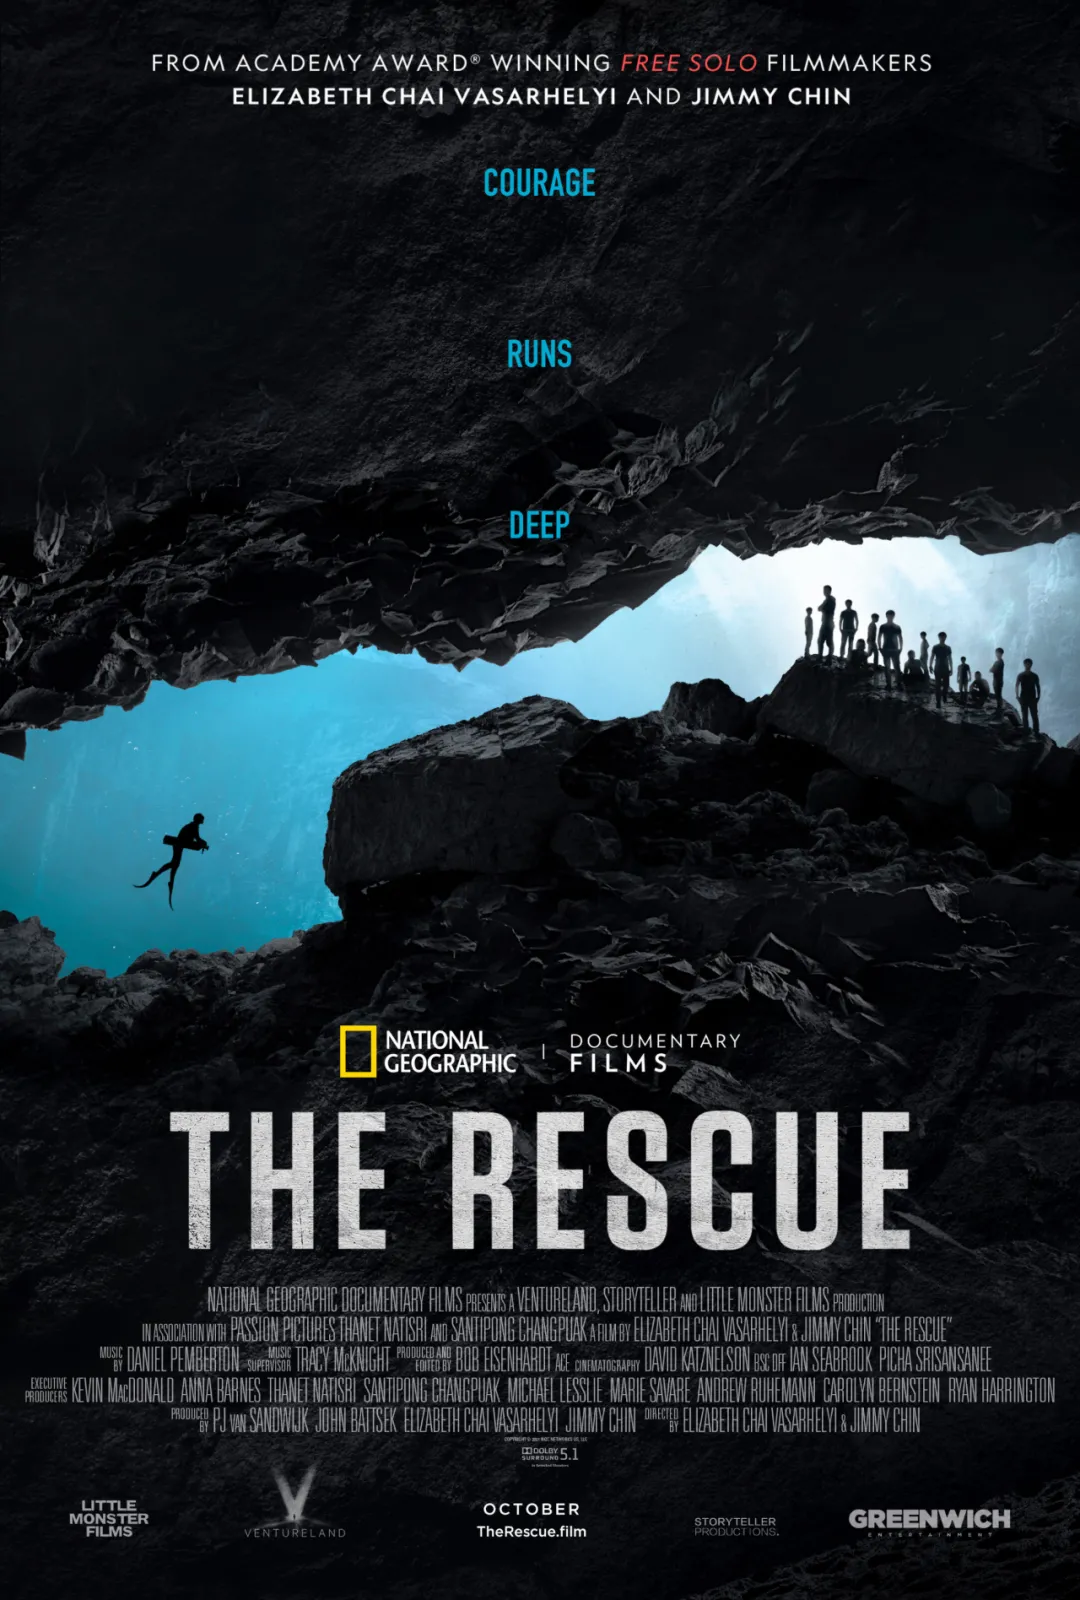 「比恐怖片还恐怖」，泰国洞穴救援内幕曝光，孩子被打麻醉剂